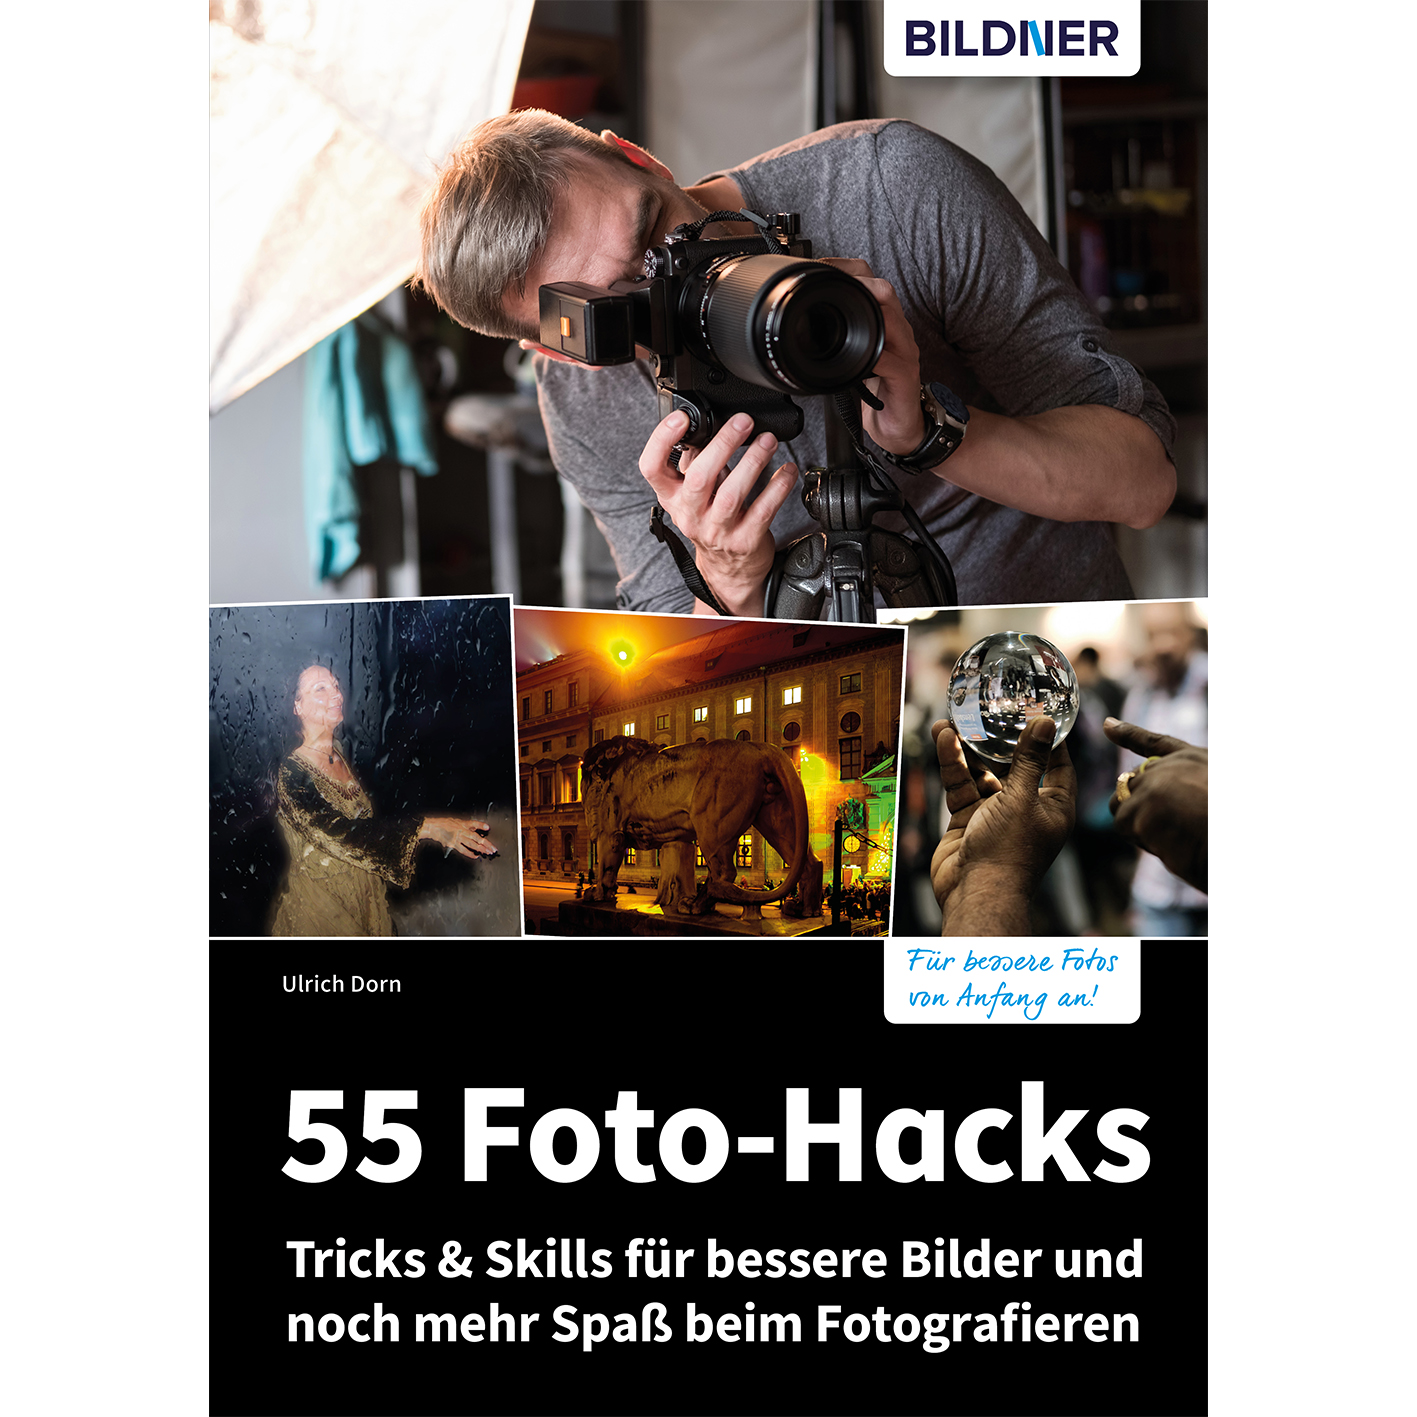 55 Foto-Hacks – Tricks & beim Spaß für mehr noch Fotografieren und Bilder Skills bessere